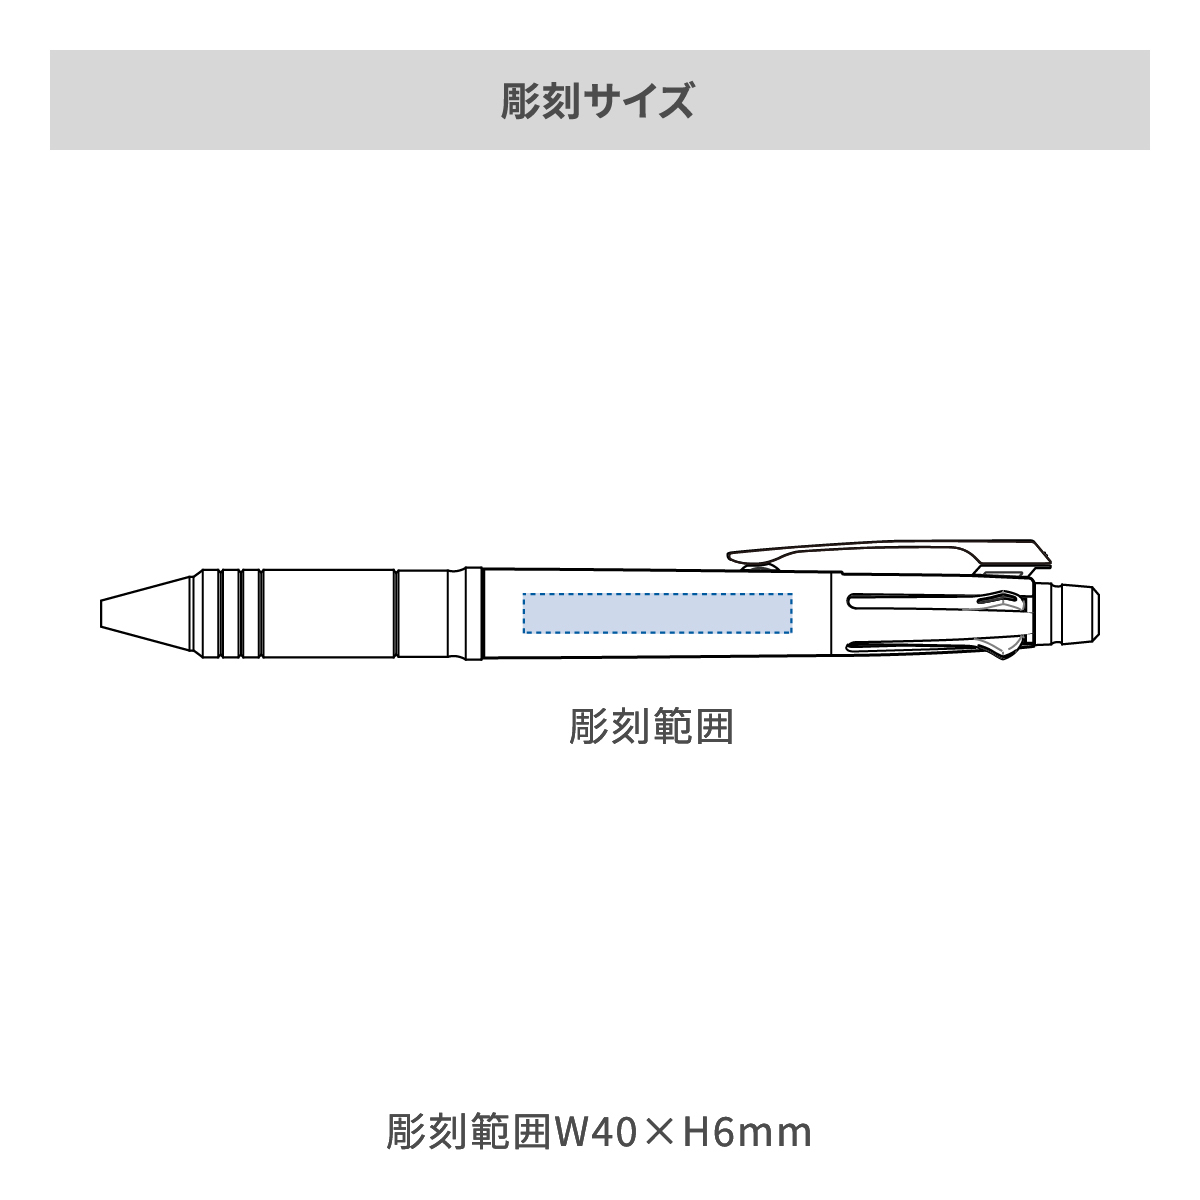 【短納期】三菱鉛筆 ジェットストリーム メタルエディション 多機能ペン 4&1 0.5mm【多機能ペン / レーザー彫刻】 画像2